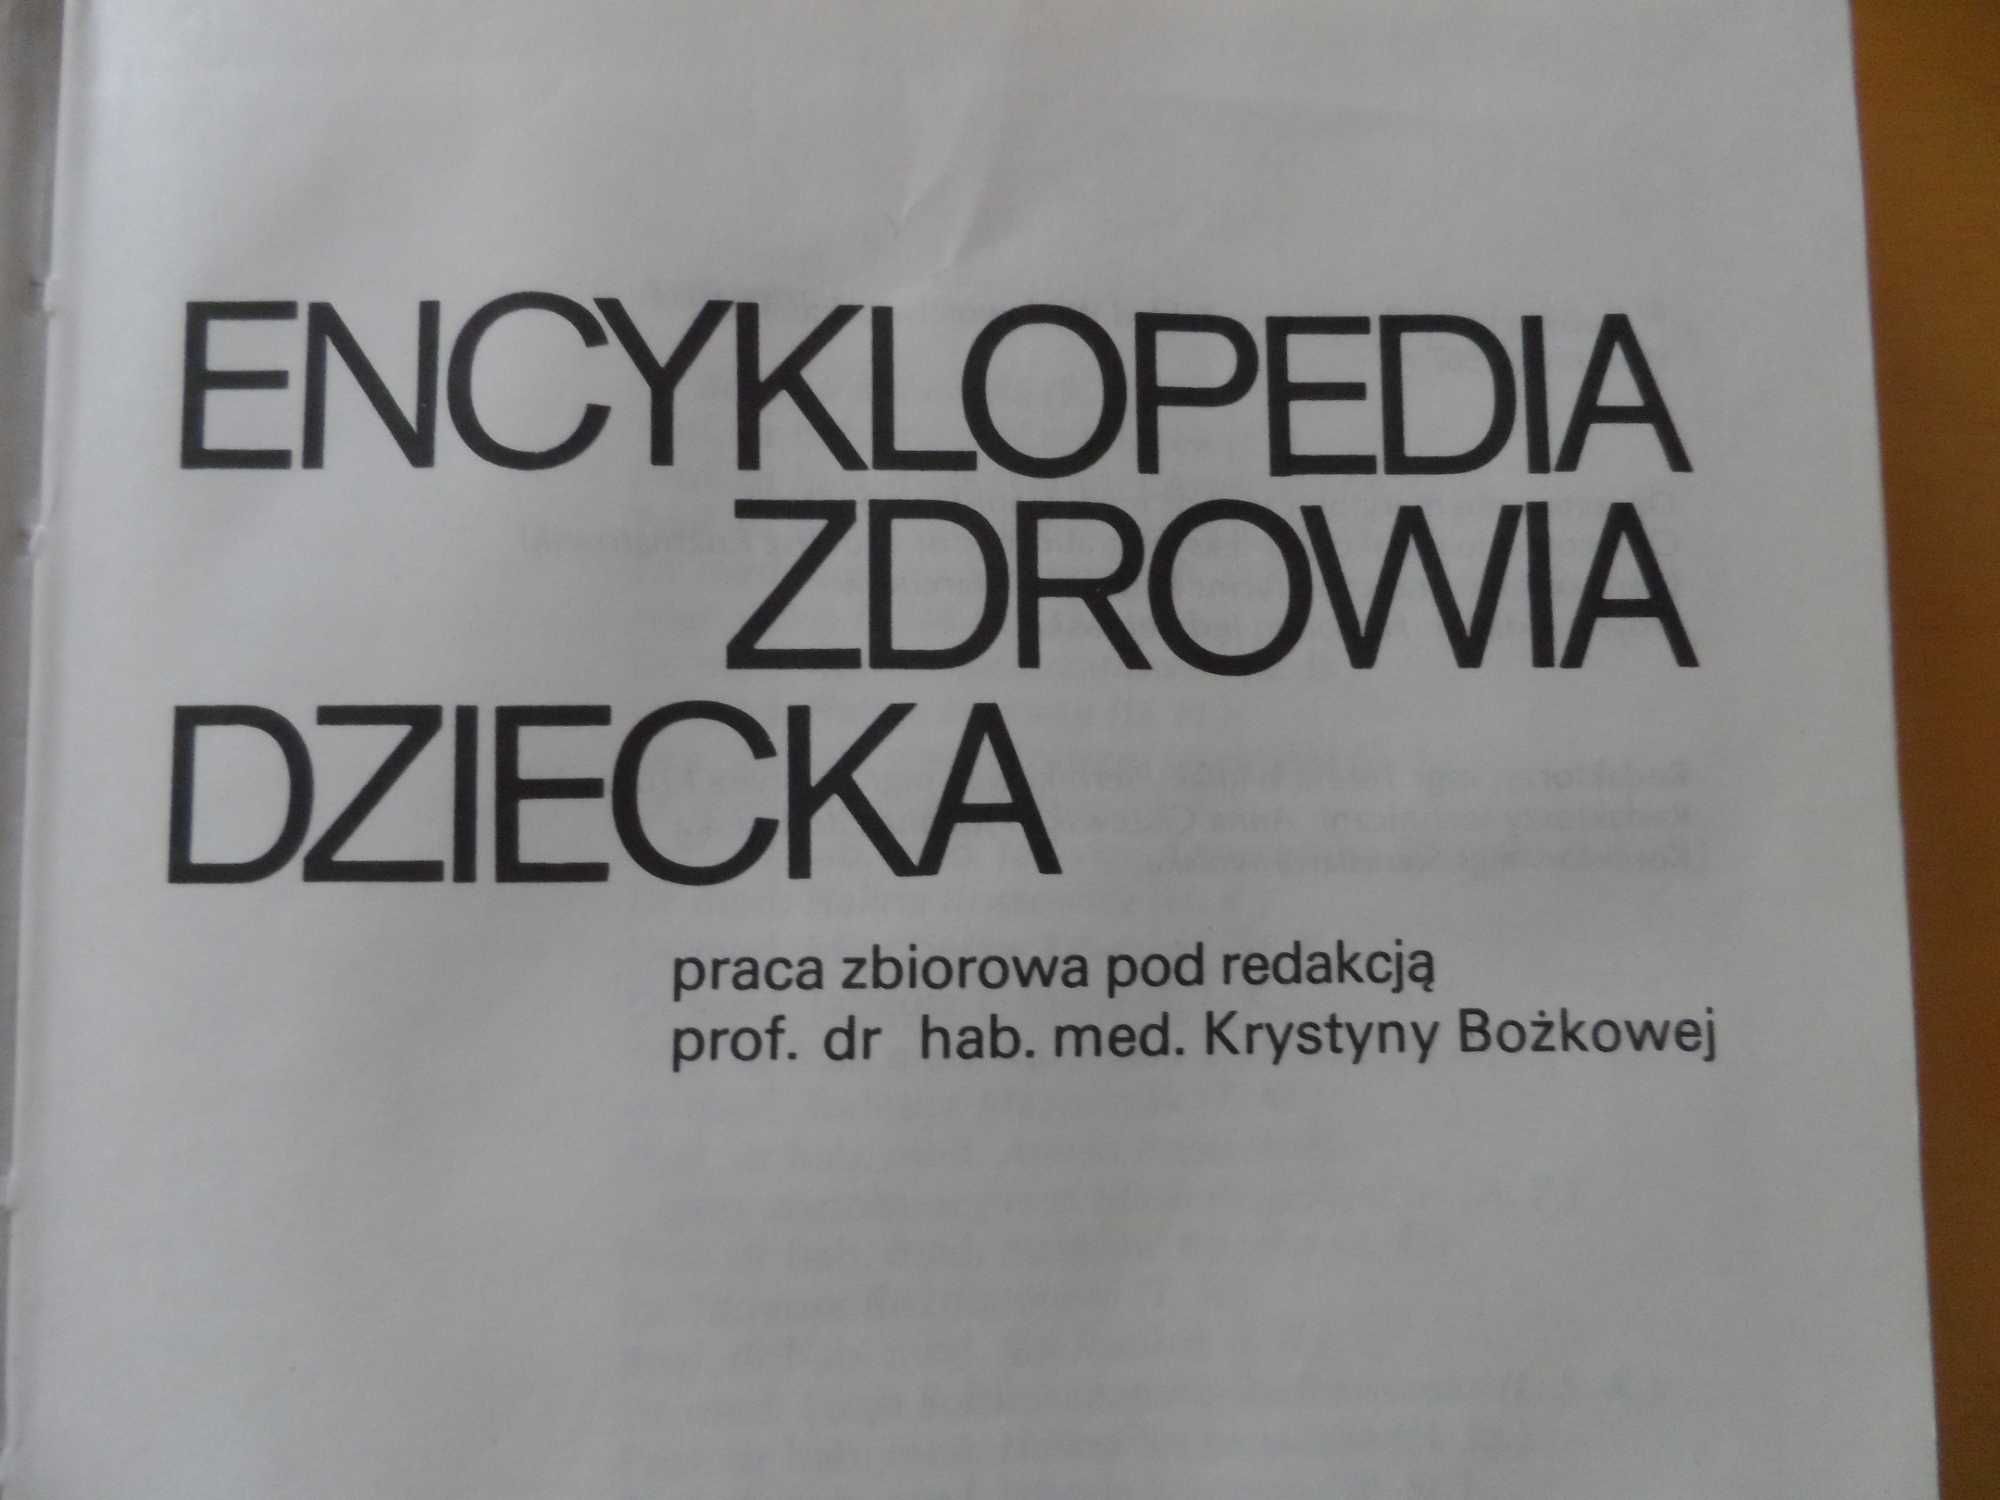 "Encyklopedia zdrowia dziecka" praca zbiorowa - K. Brożkowa